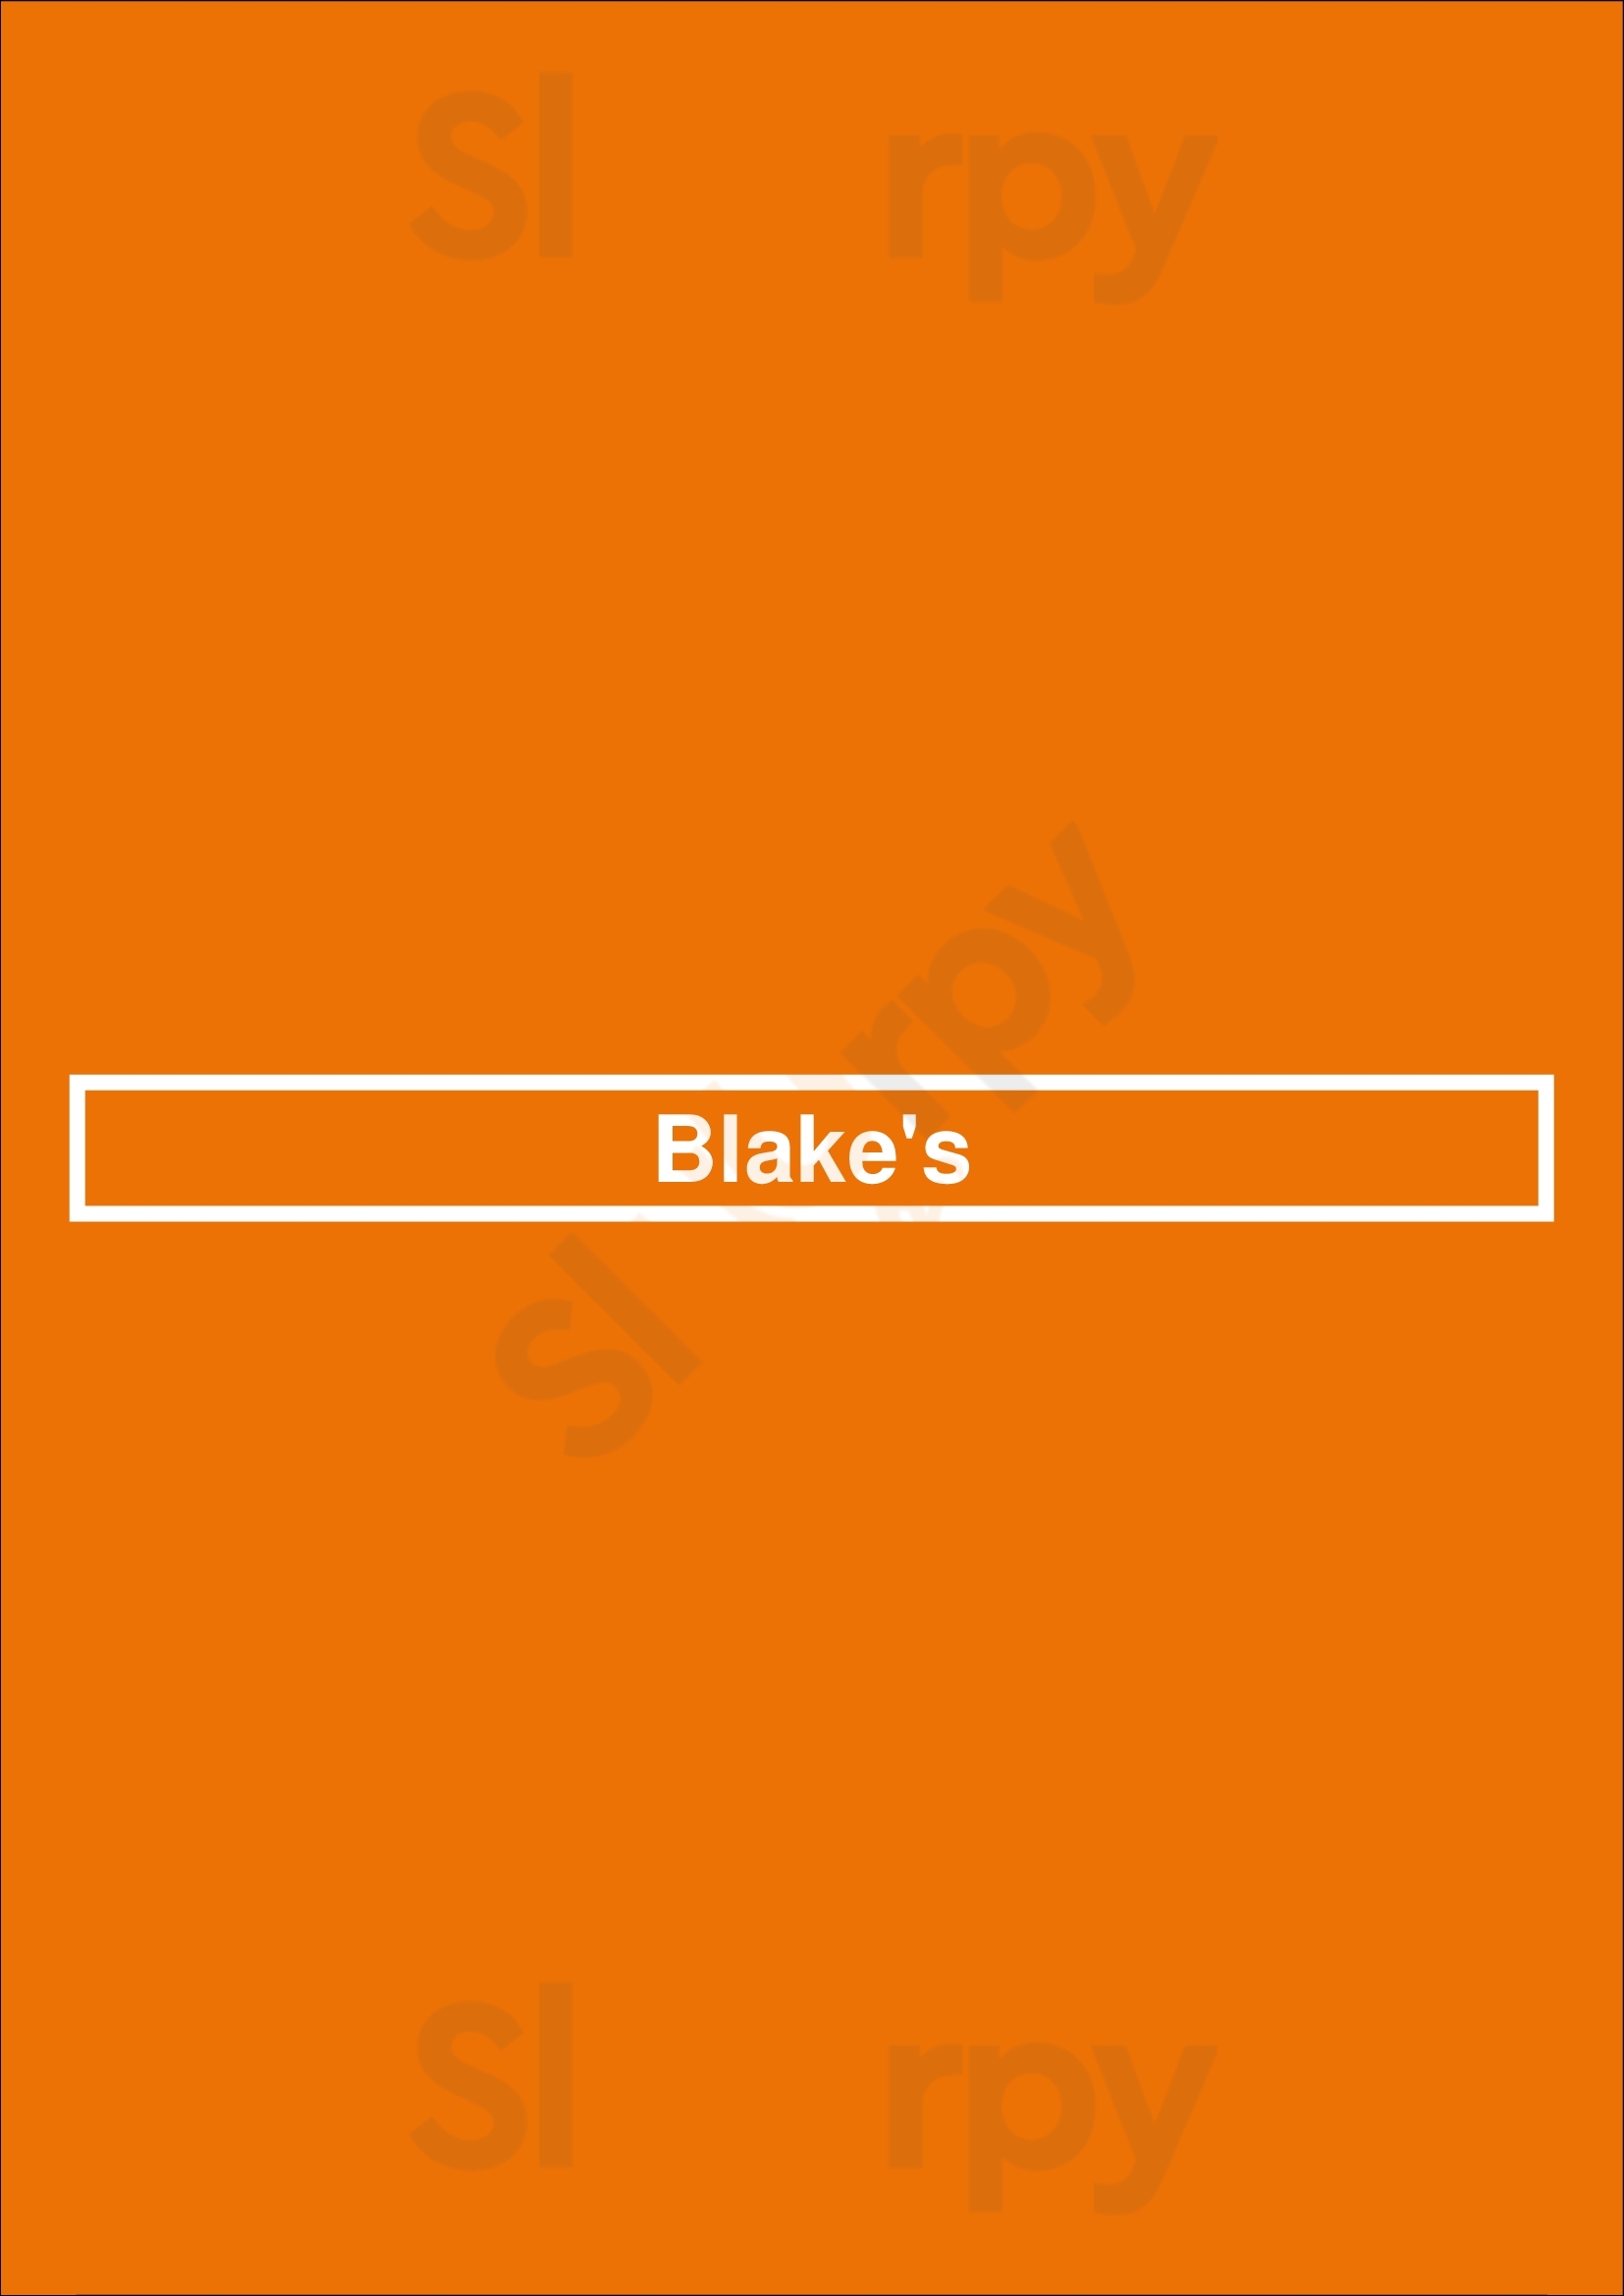 Blake's Boston Menu - 1